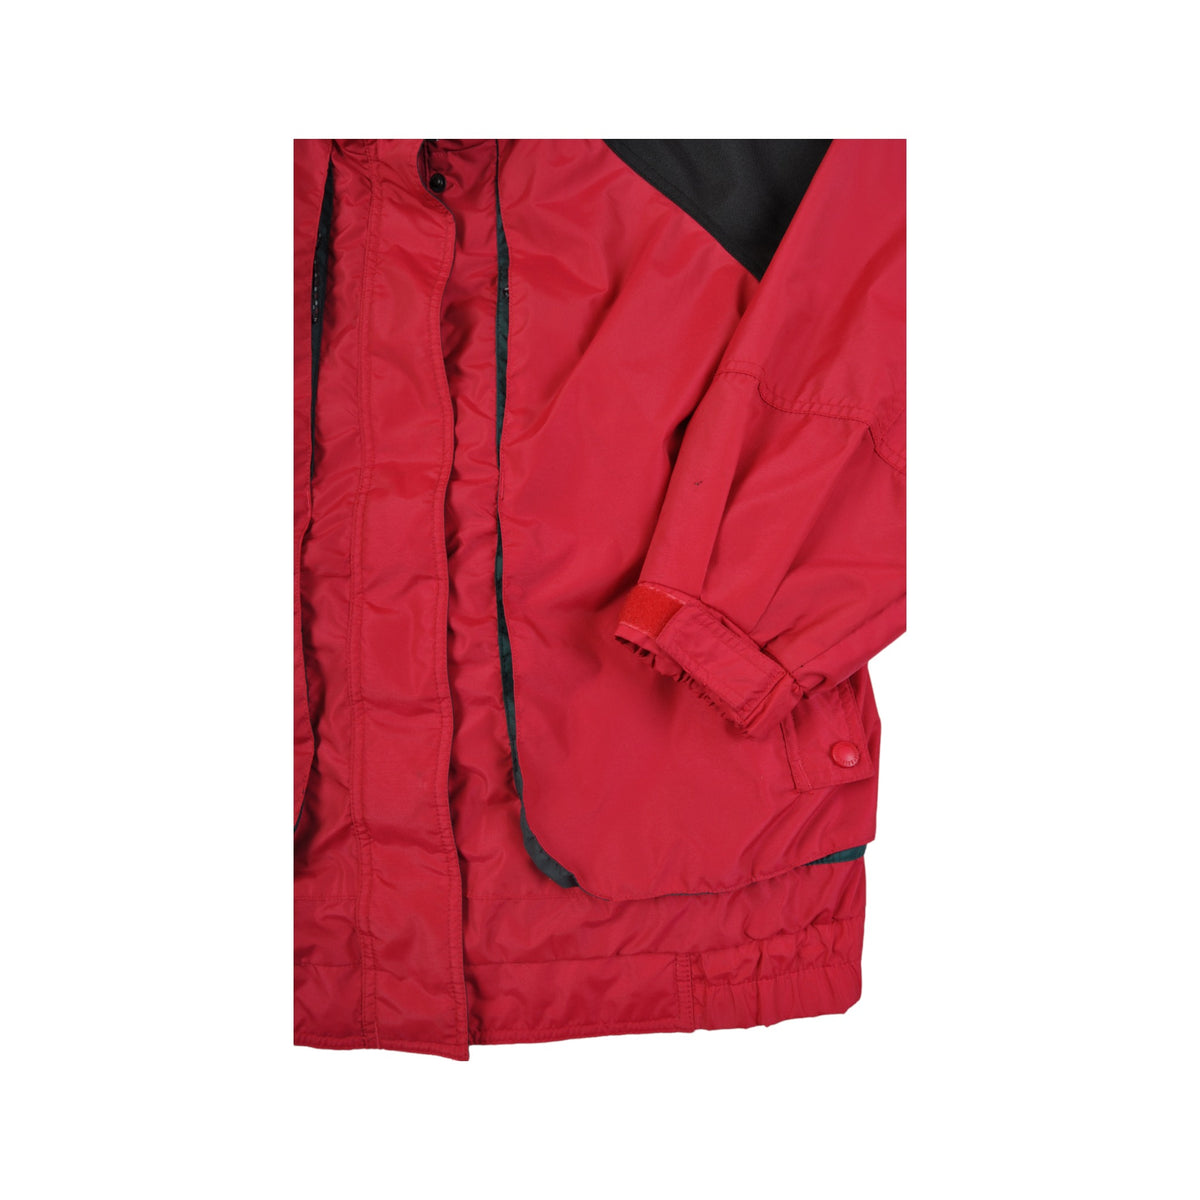 Vintage Columbia Ski Jacket Waterproof Red/Black Ladies Medium - Cloak ...